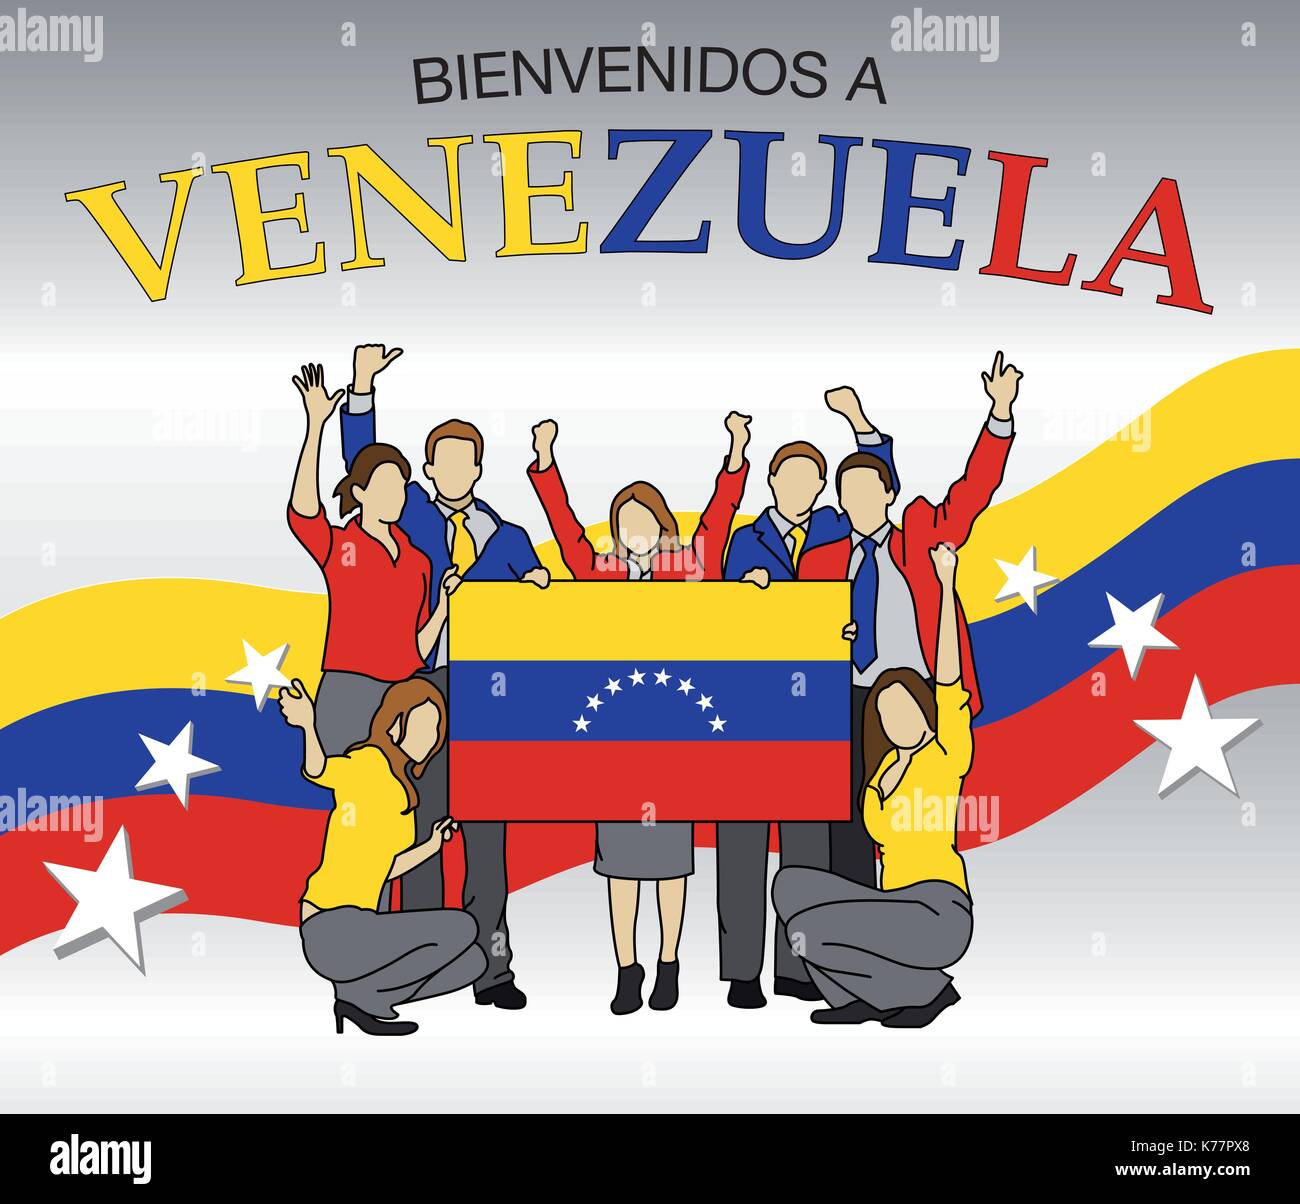 Willkommen in Venezuela in spanischer Sprache - Gruppe von Menschen in den Farben der Venezuela Flagge gekleidet, winken mit Händen und halten die Flagge - Vektor Stock Vektor